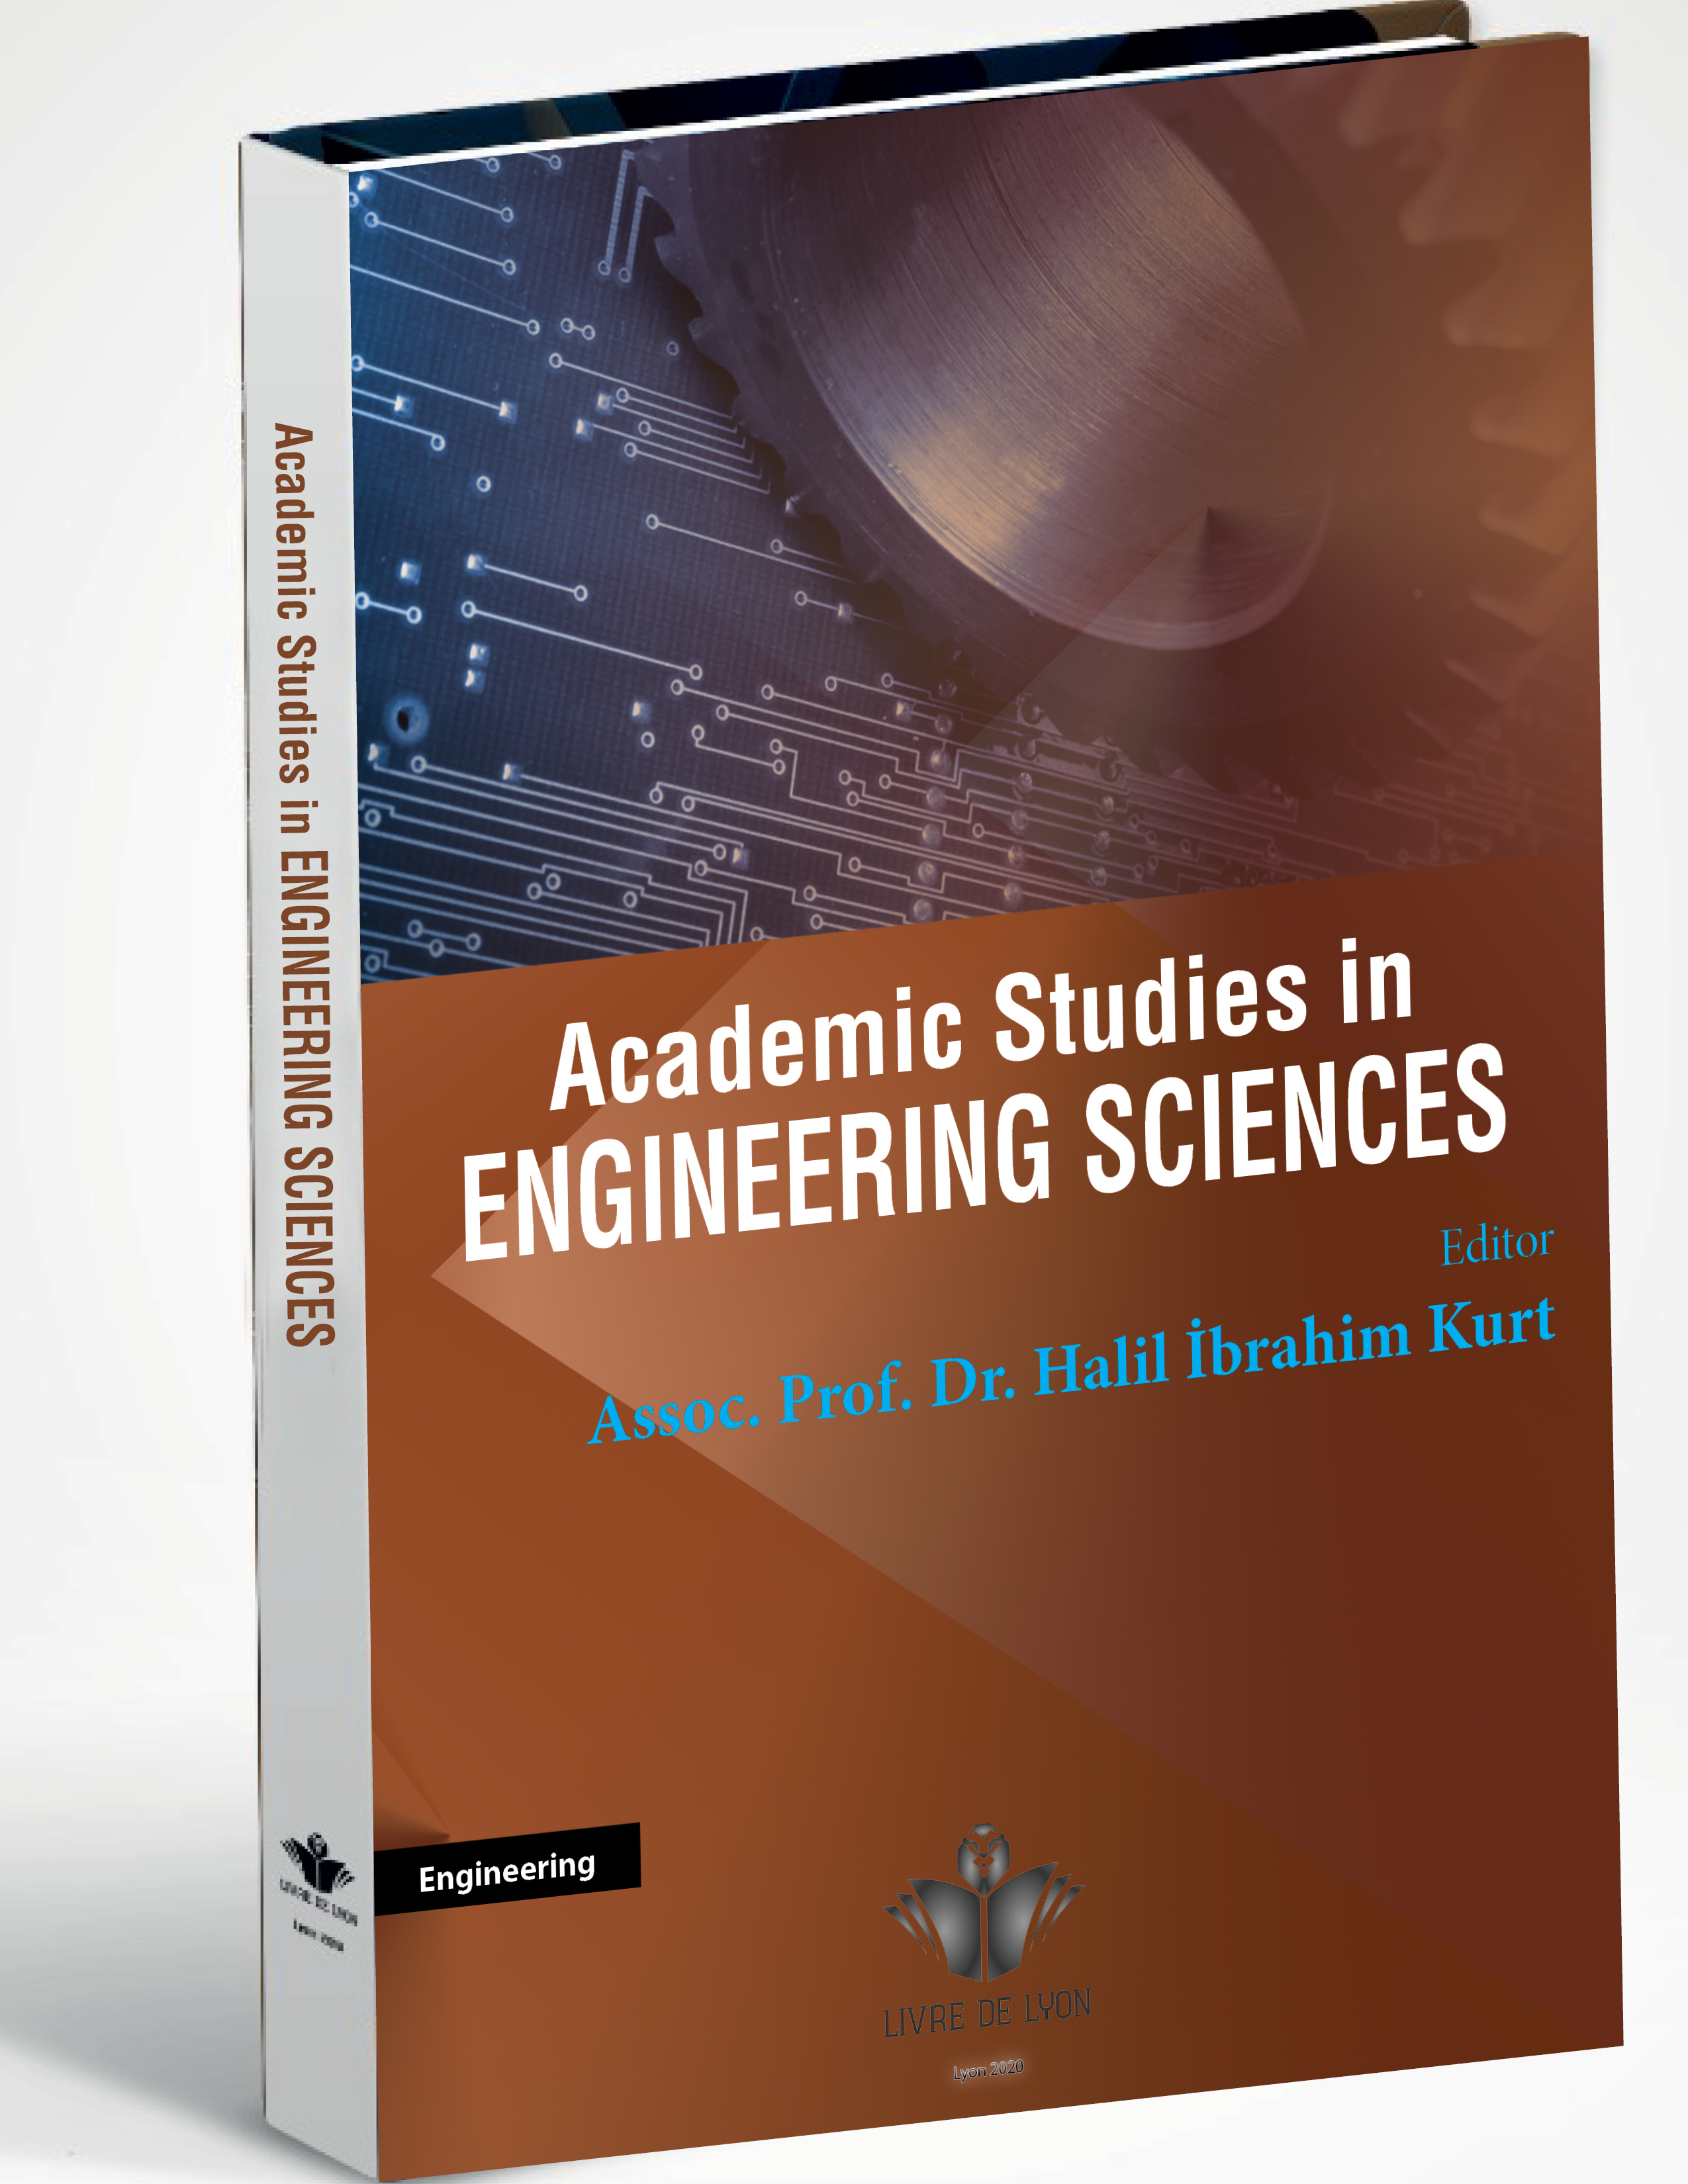 Academic Studies in Engineering Sciences